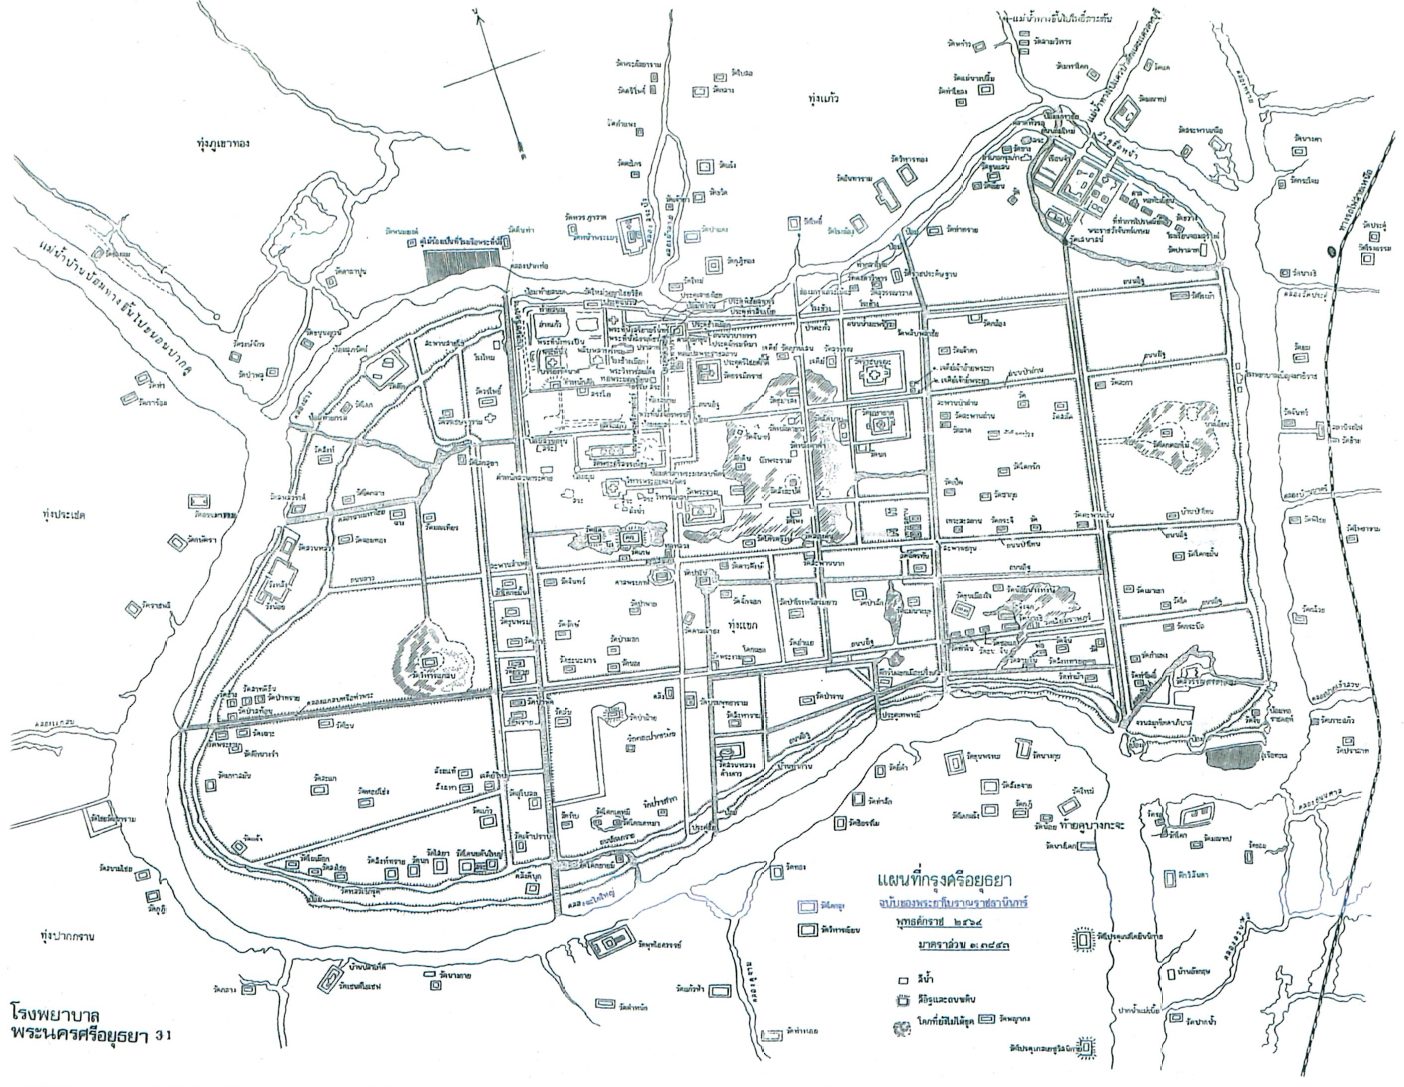 แผนที่ กรุงศรีอยุธยา โดย พระยาโบราณราชธานินทร์ พ.ศ. 2469 เกาะเมืองอยุธยา